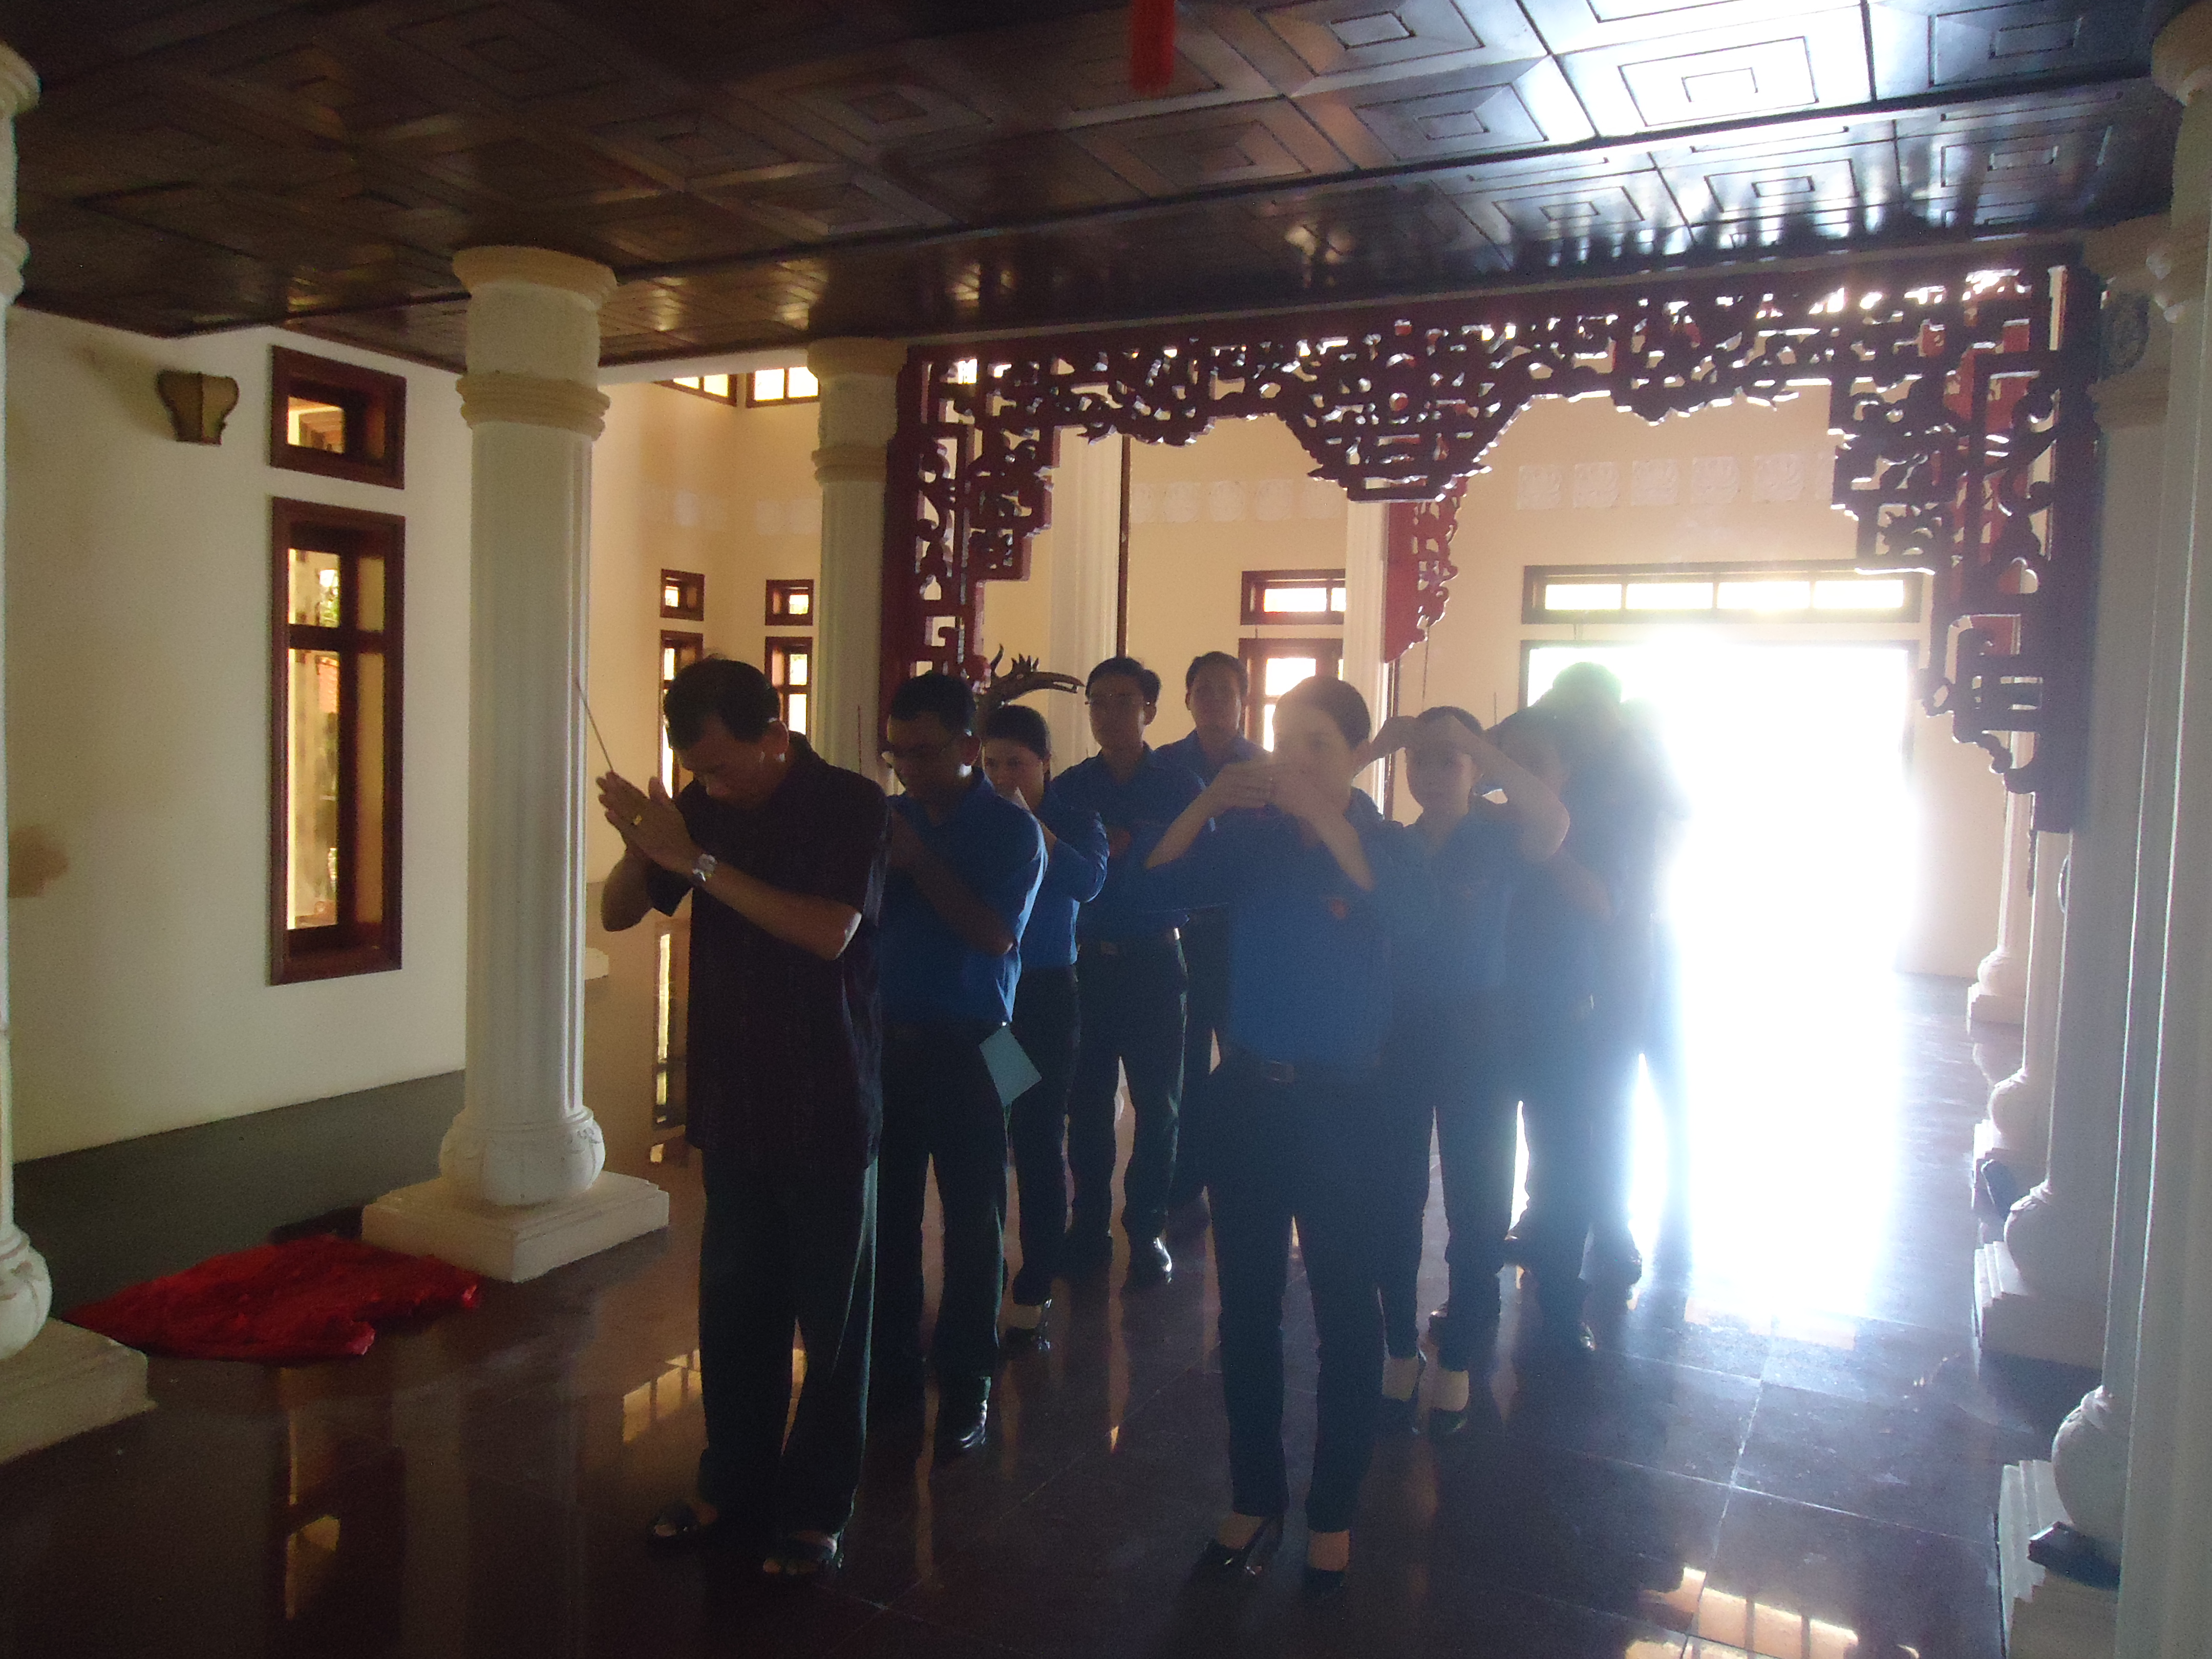 Hành quân về nguồn tại Đền thờ Bác thuộc xã Lương Tâm, huyện Long Mỹ, tỉnh Hậu Giang